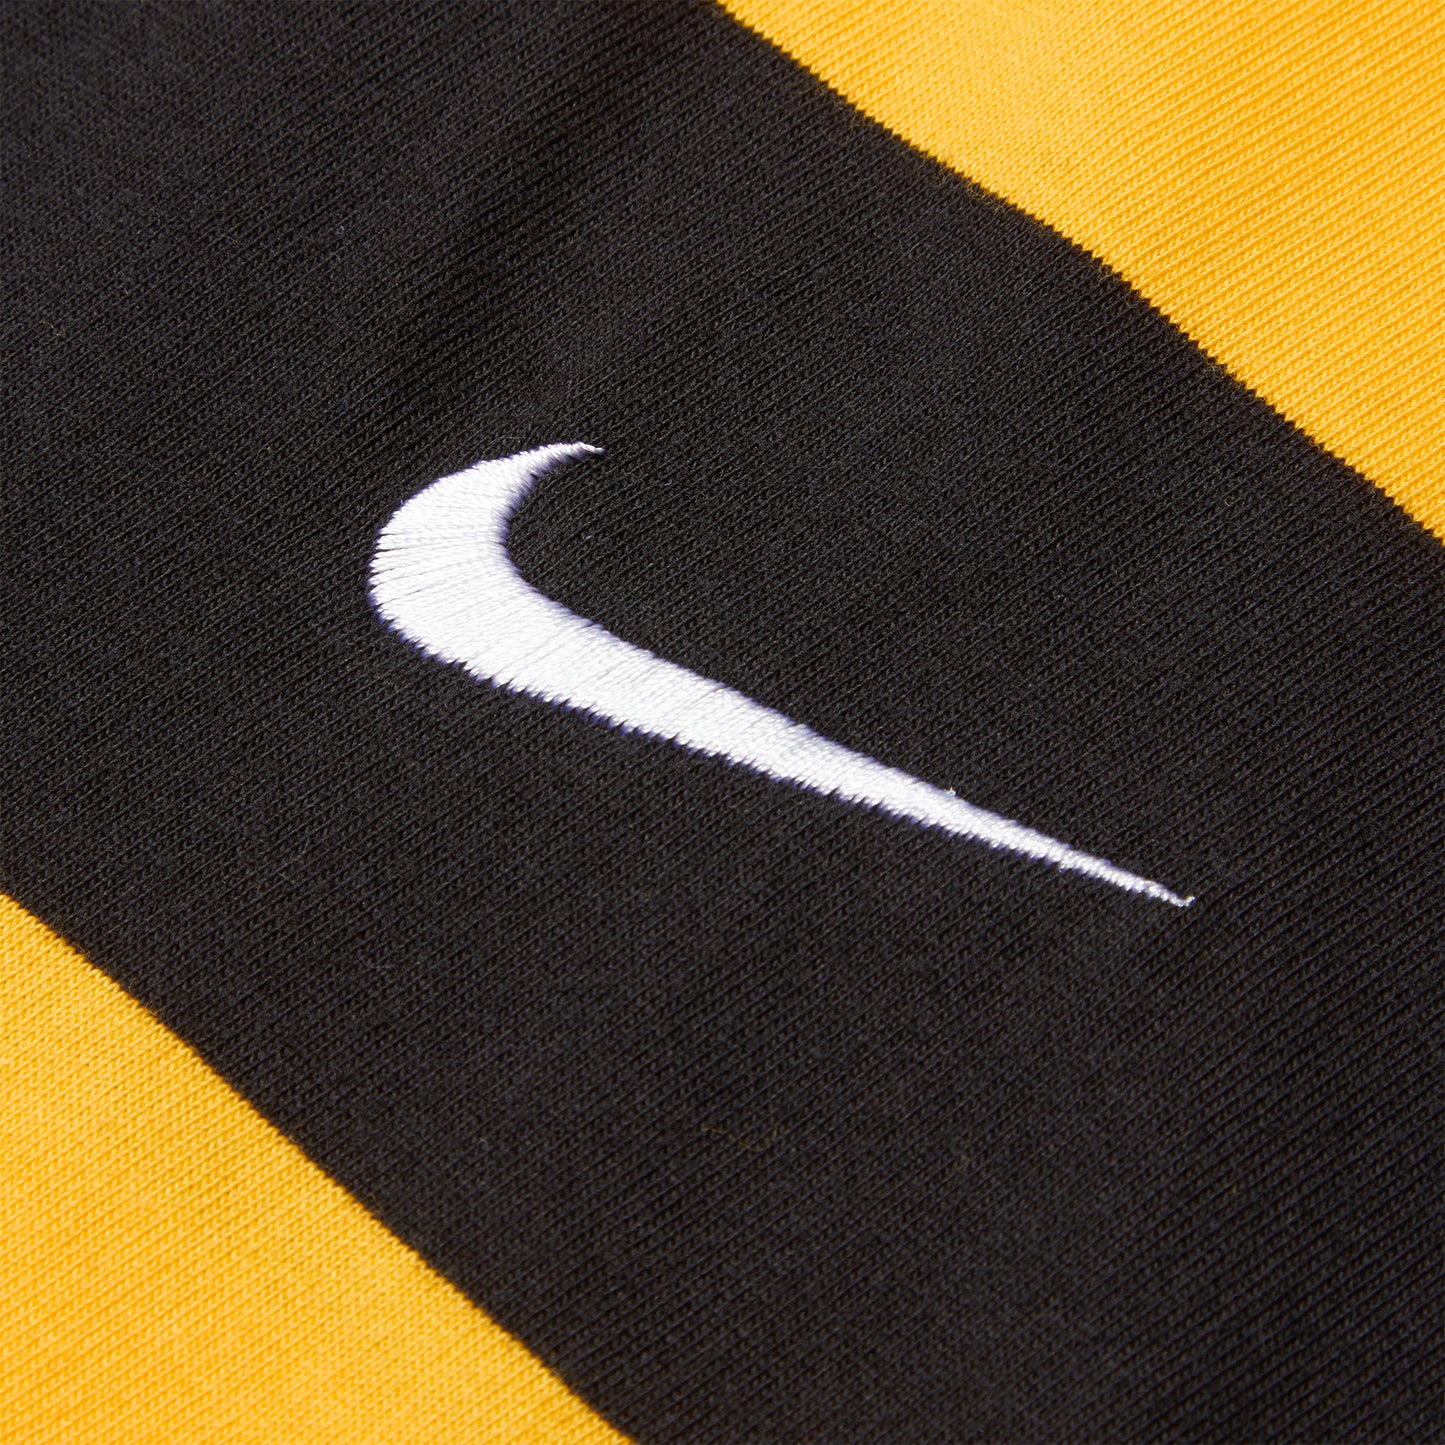 Nike SB Skate T-Shirt (University Gold/Black)